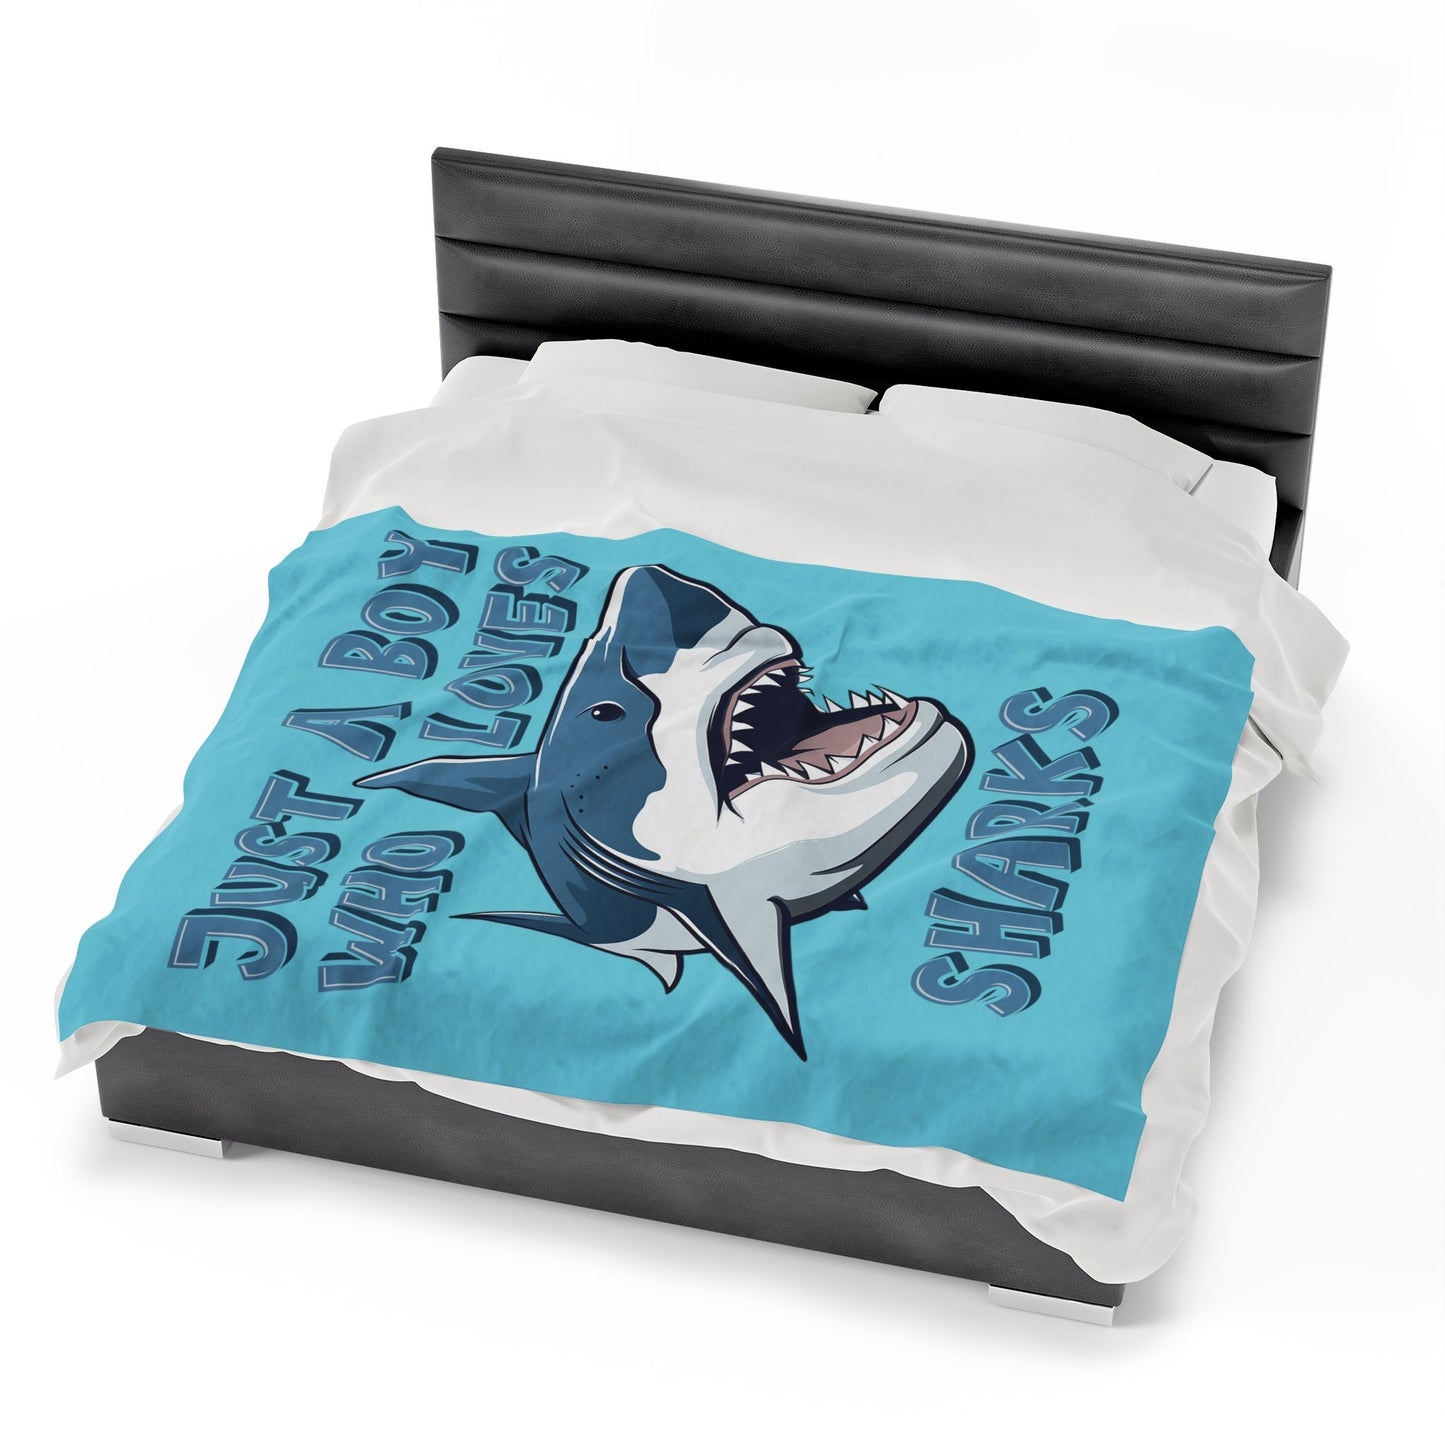 Just A Boy Who Loves Sharks Blanket, Plush Velveteen Throw Blanket, Shark Gift for Boy, Birthday Boy Gift, Ocean Lover Cozy Bed Blanket